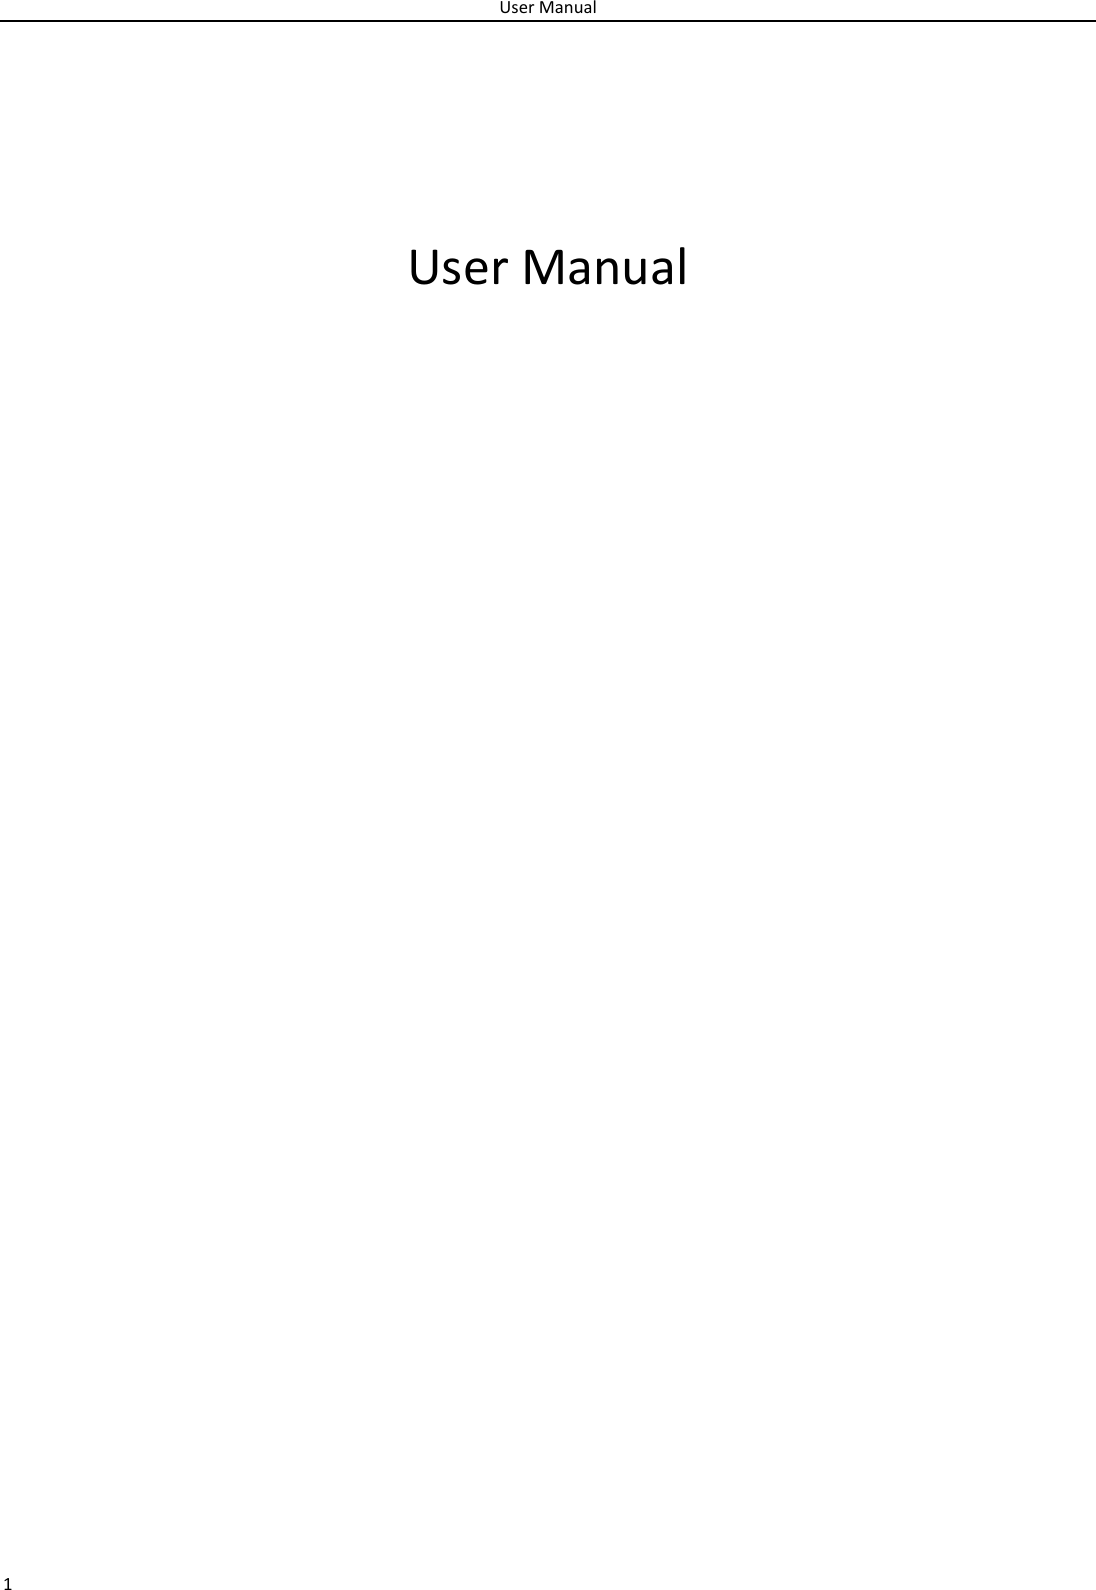 UserManual1UserManual